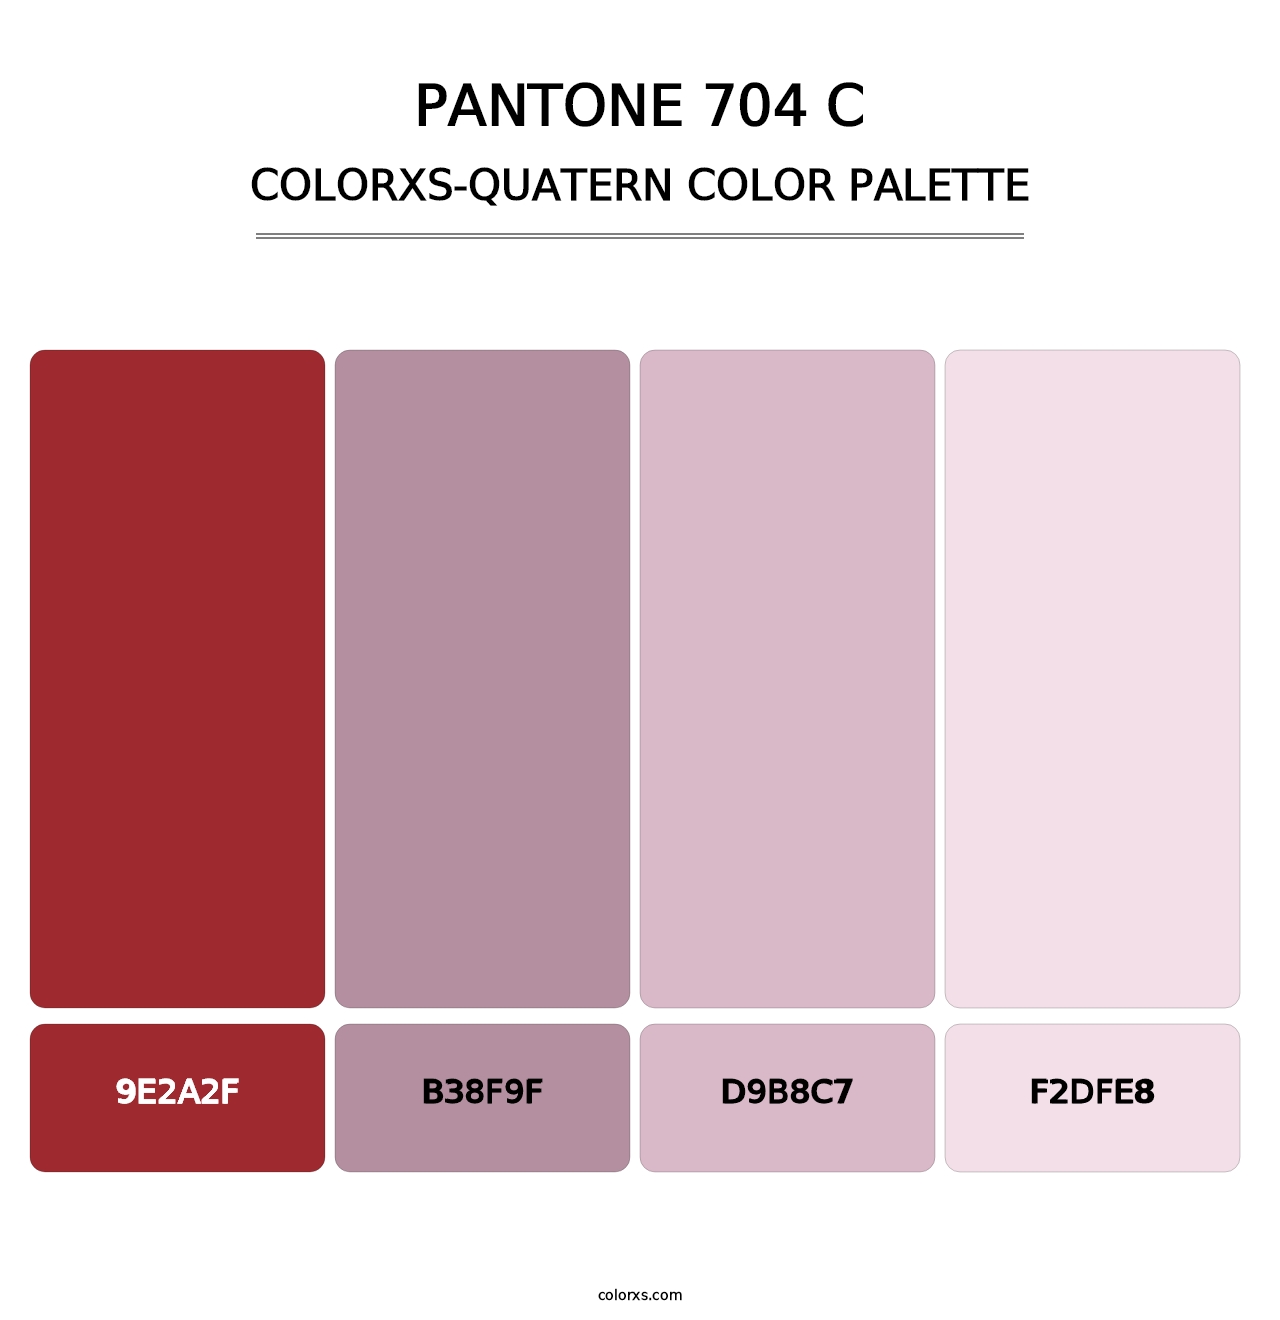 PANTONE 704 C - Colorxs Quatern Palette